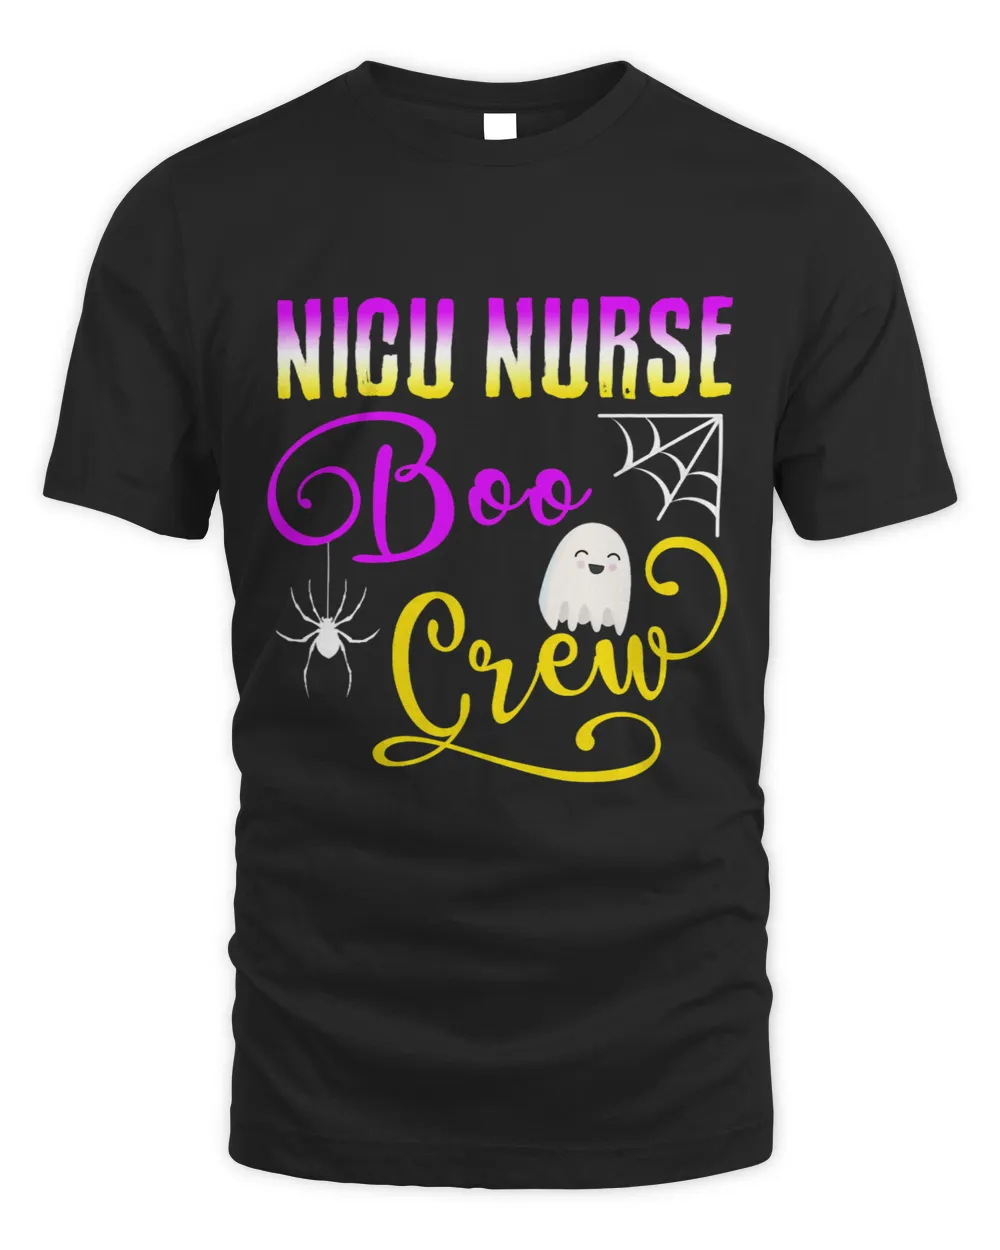 NICU Nurse Boo Crew Halloween Ghost Spider RN Group